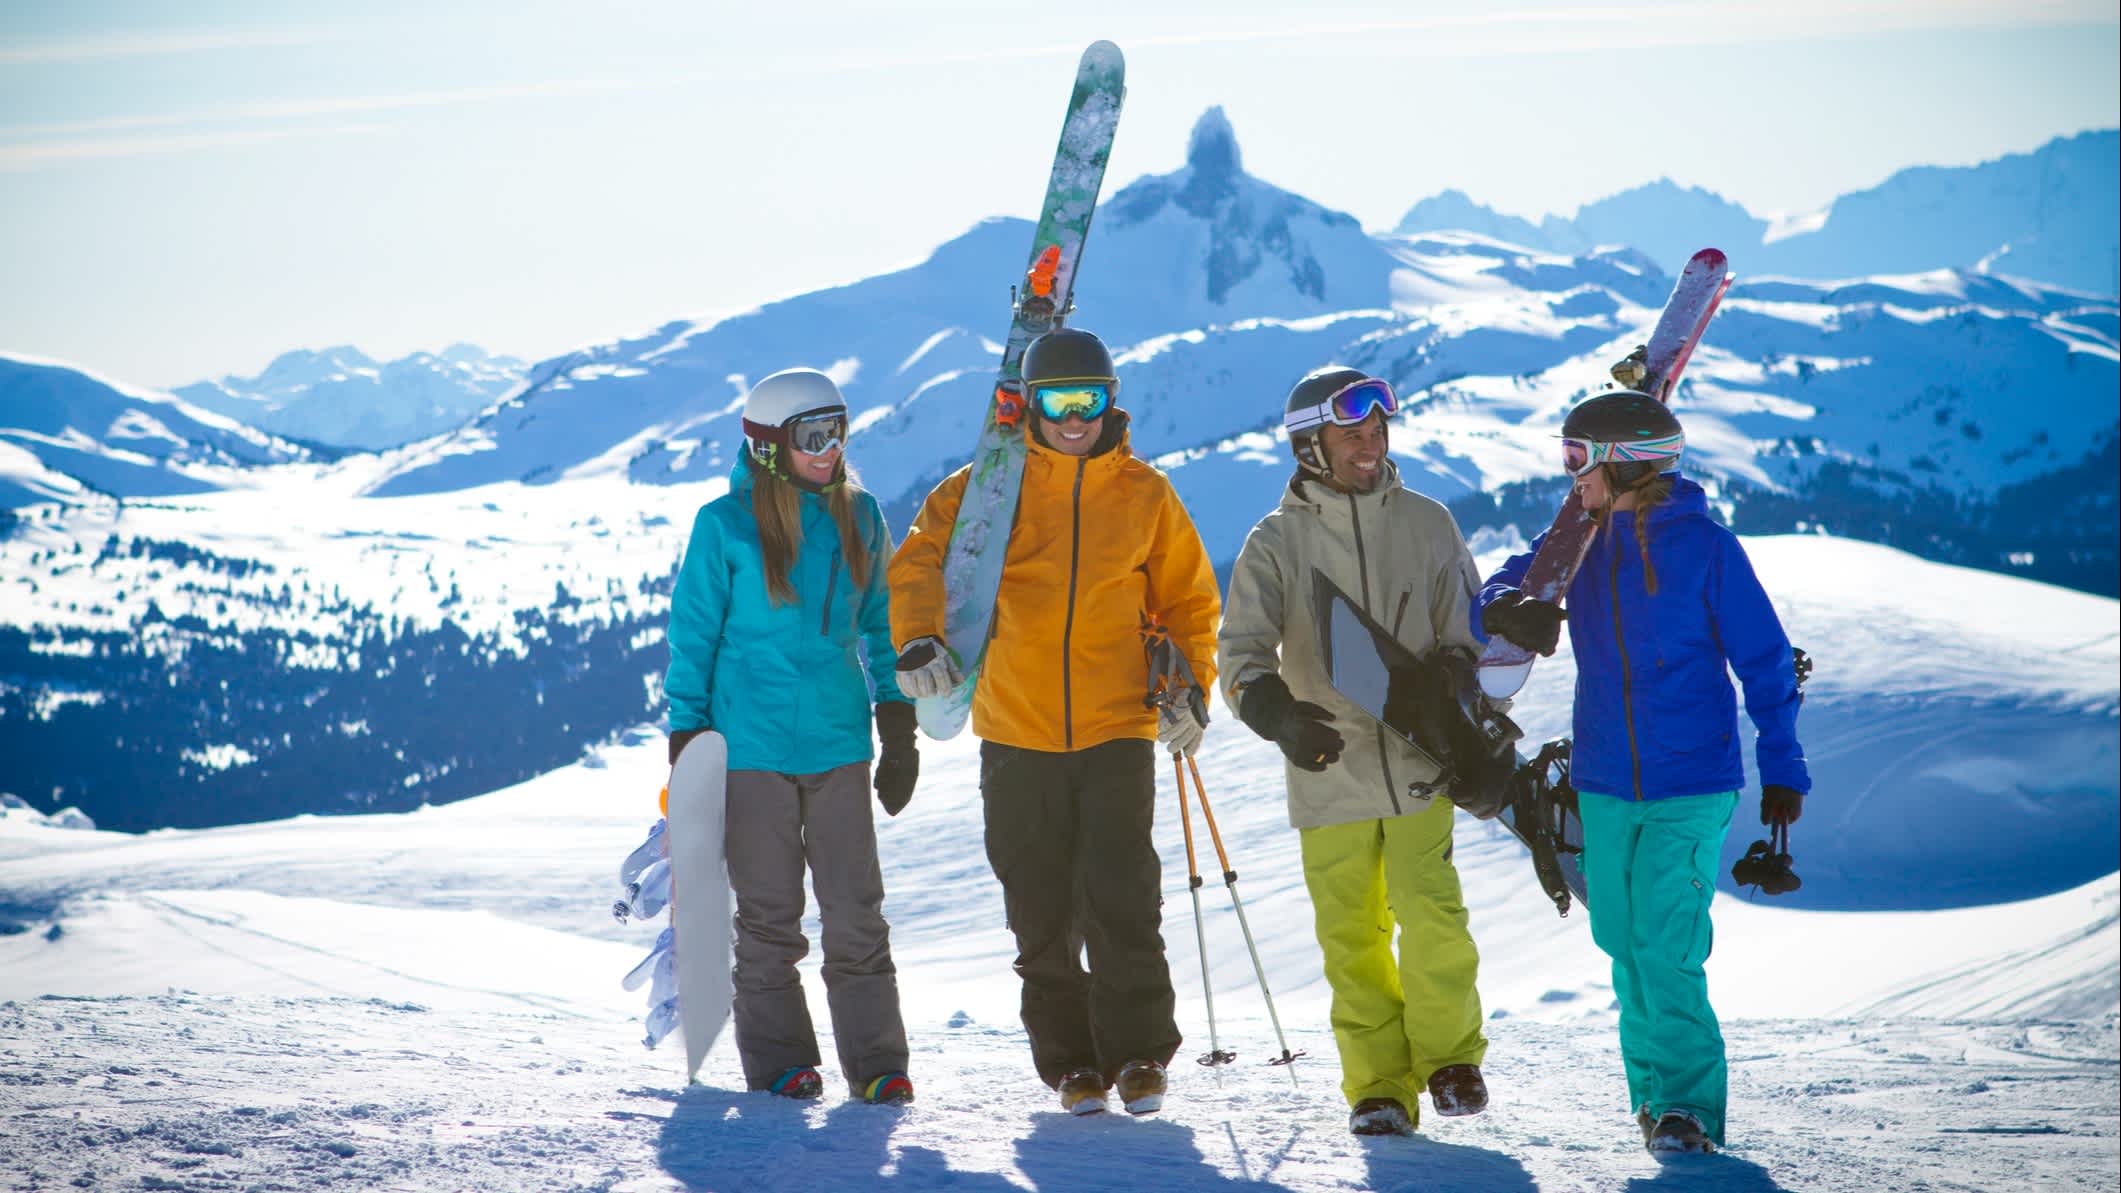 Gruppe von Freunden im Skigebiet Whistler Blackcomb, BC, Kanada.